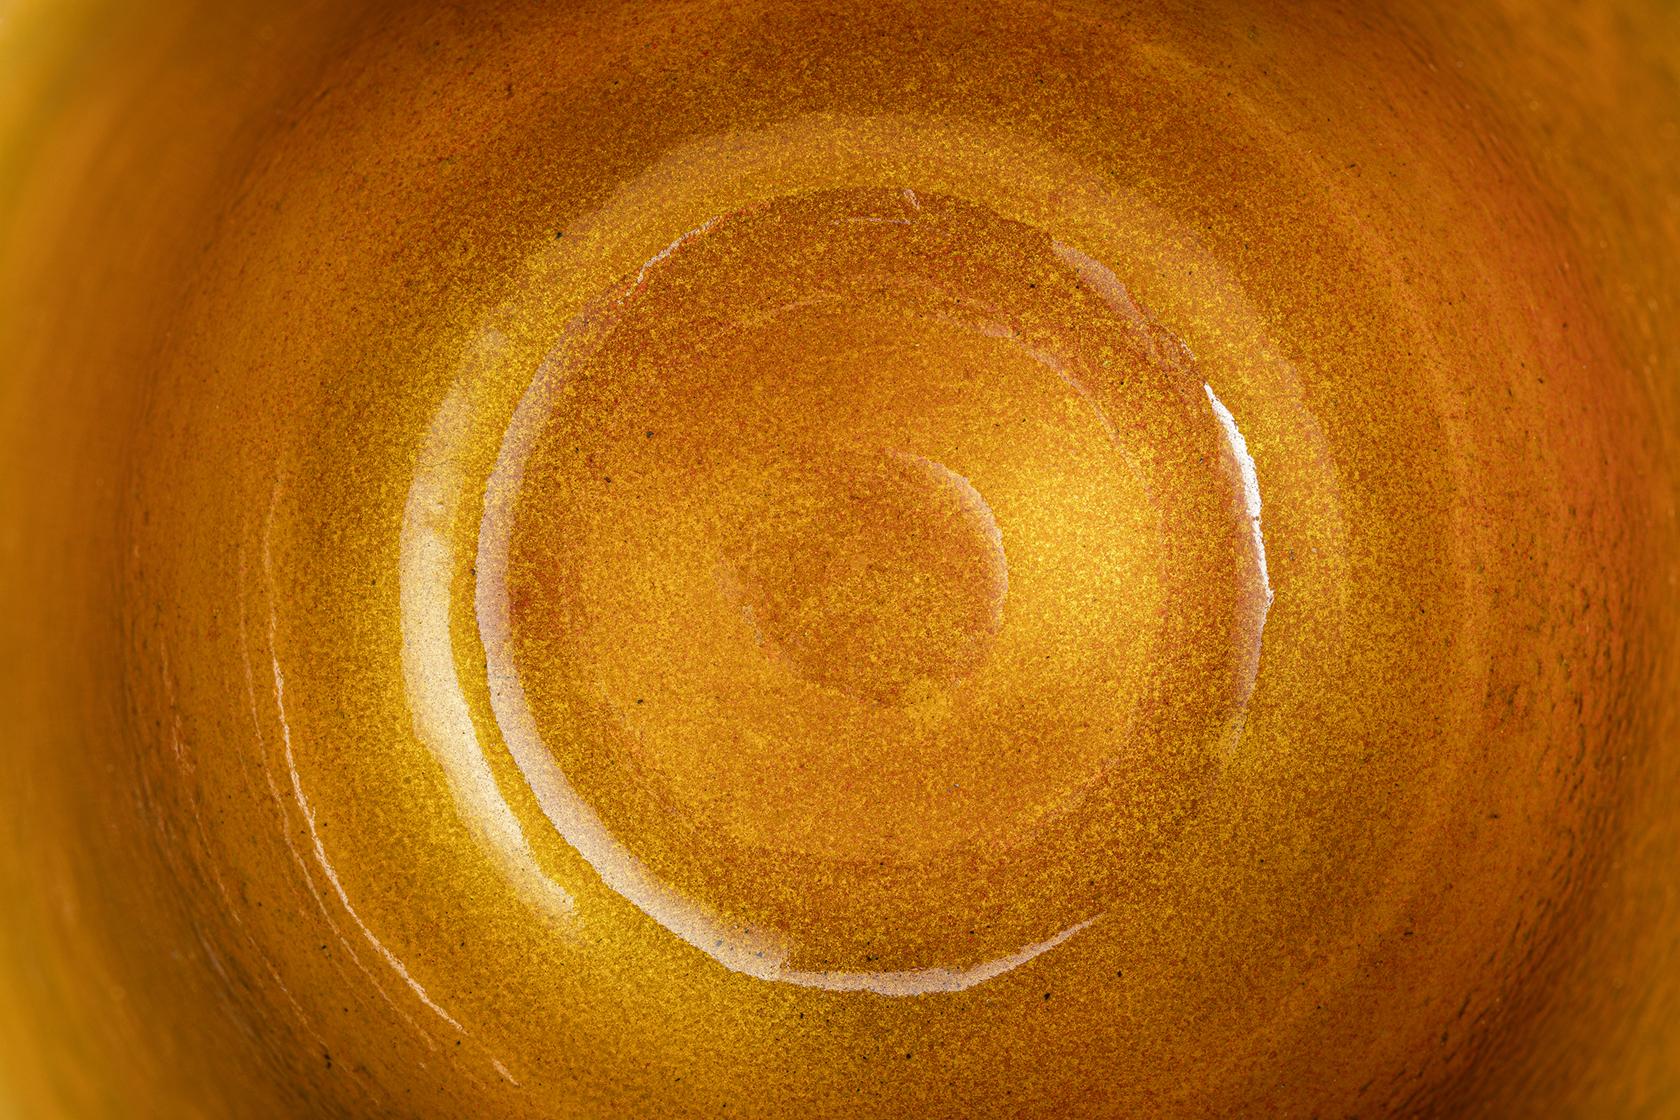 Collezione di vasi in rame con interno smaltato ed esterno brunito o smaltato. A differenza dei vasi Novae, i vasi Mercurio sono caratterizzati da un aspetto più ruvido e irregolare. La smaltatura a fuoco su rame è una tecnica artigianale complessa,